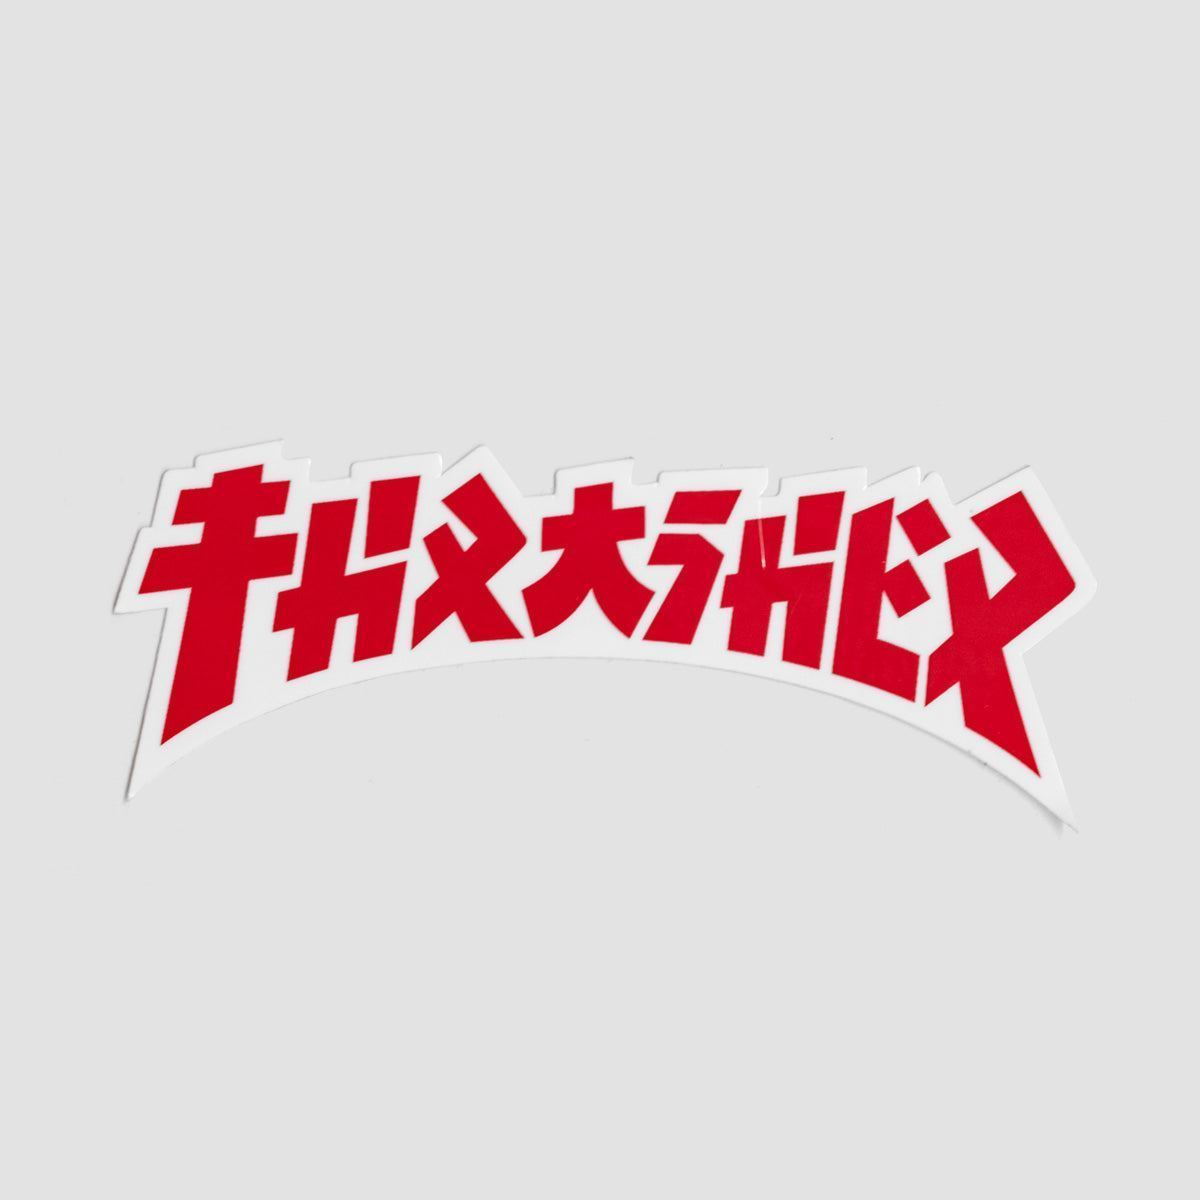 Thrasher Godzilla Die Cut Sticker Red/White 100x40mm